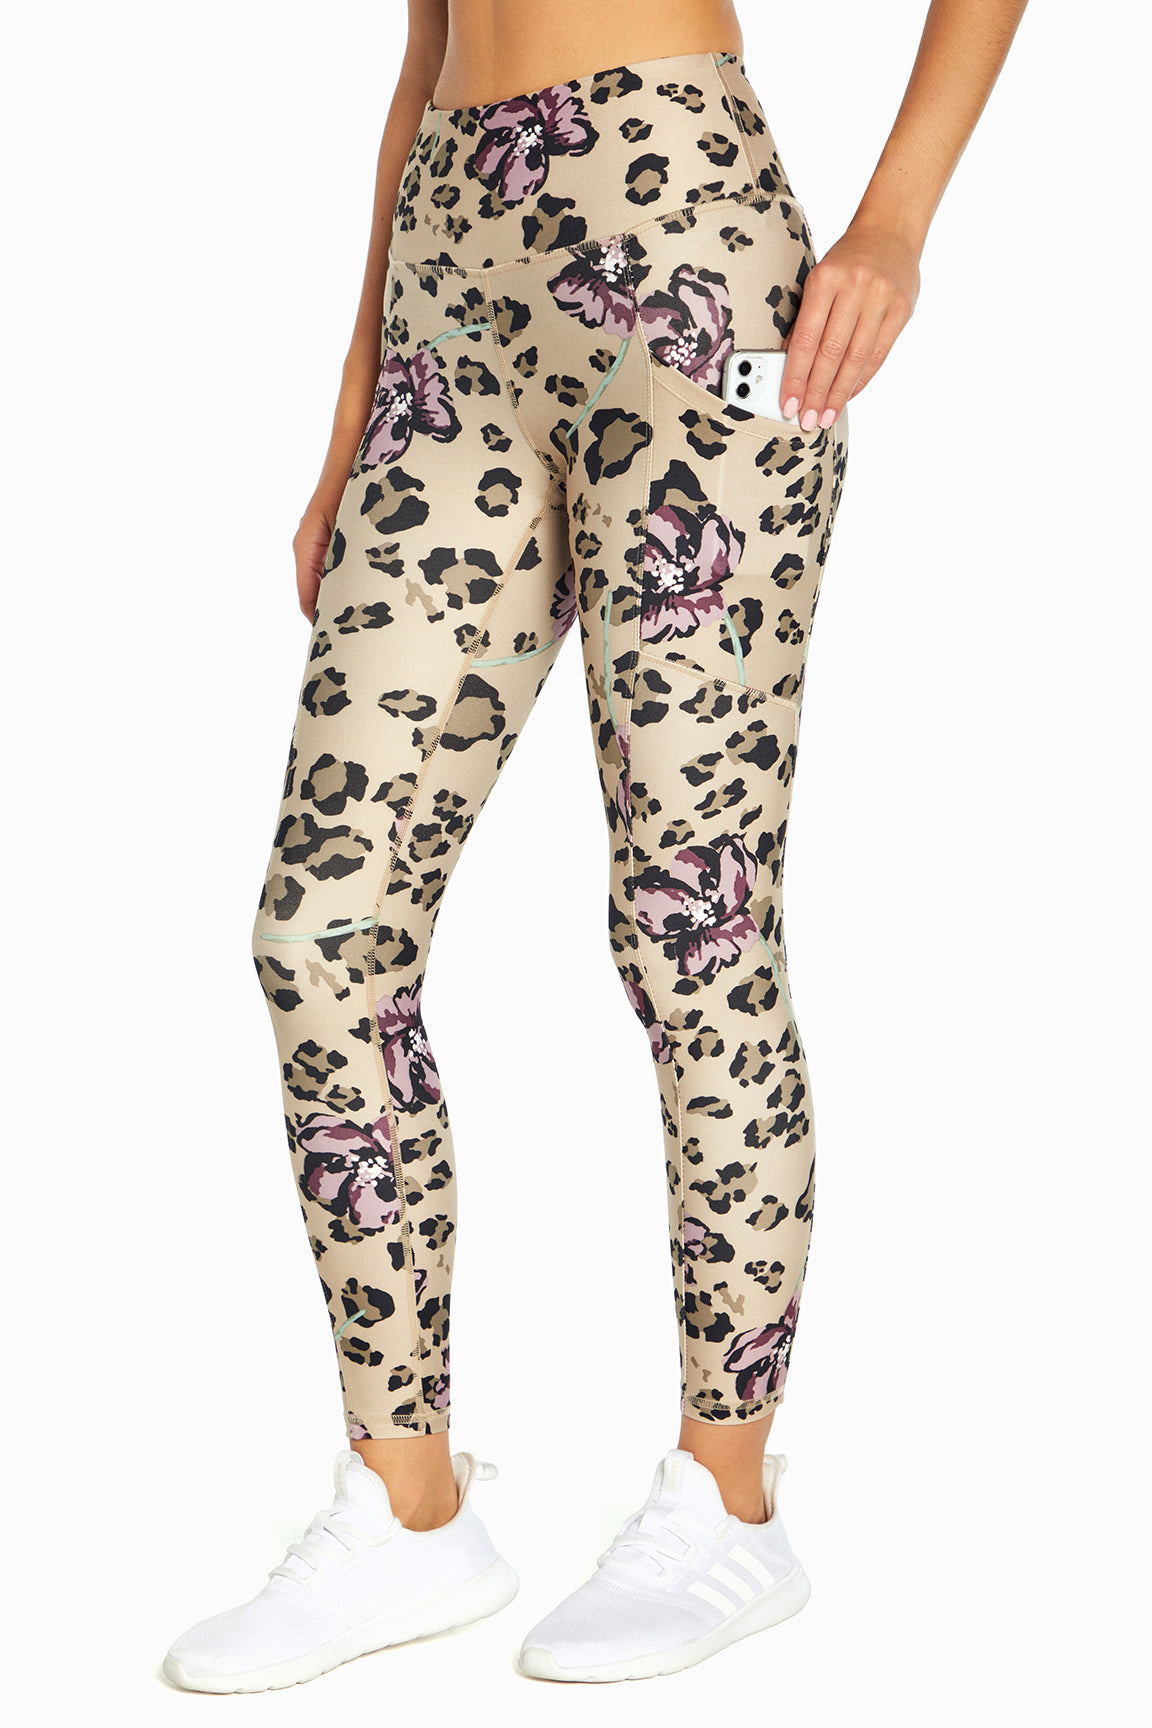 Eclipse Printed Legging (Valerian Leopard Floral)